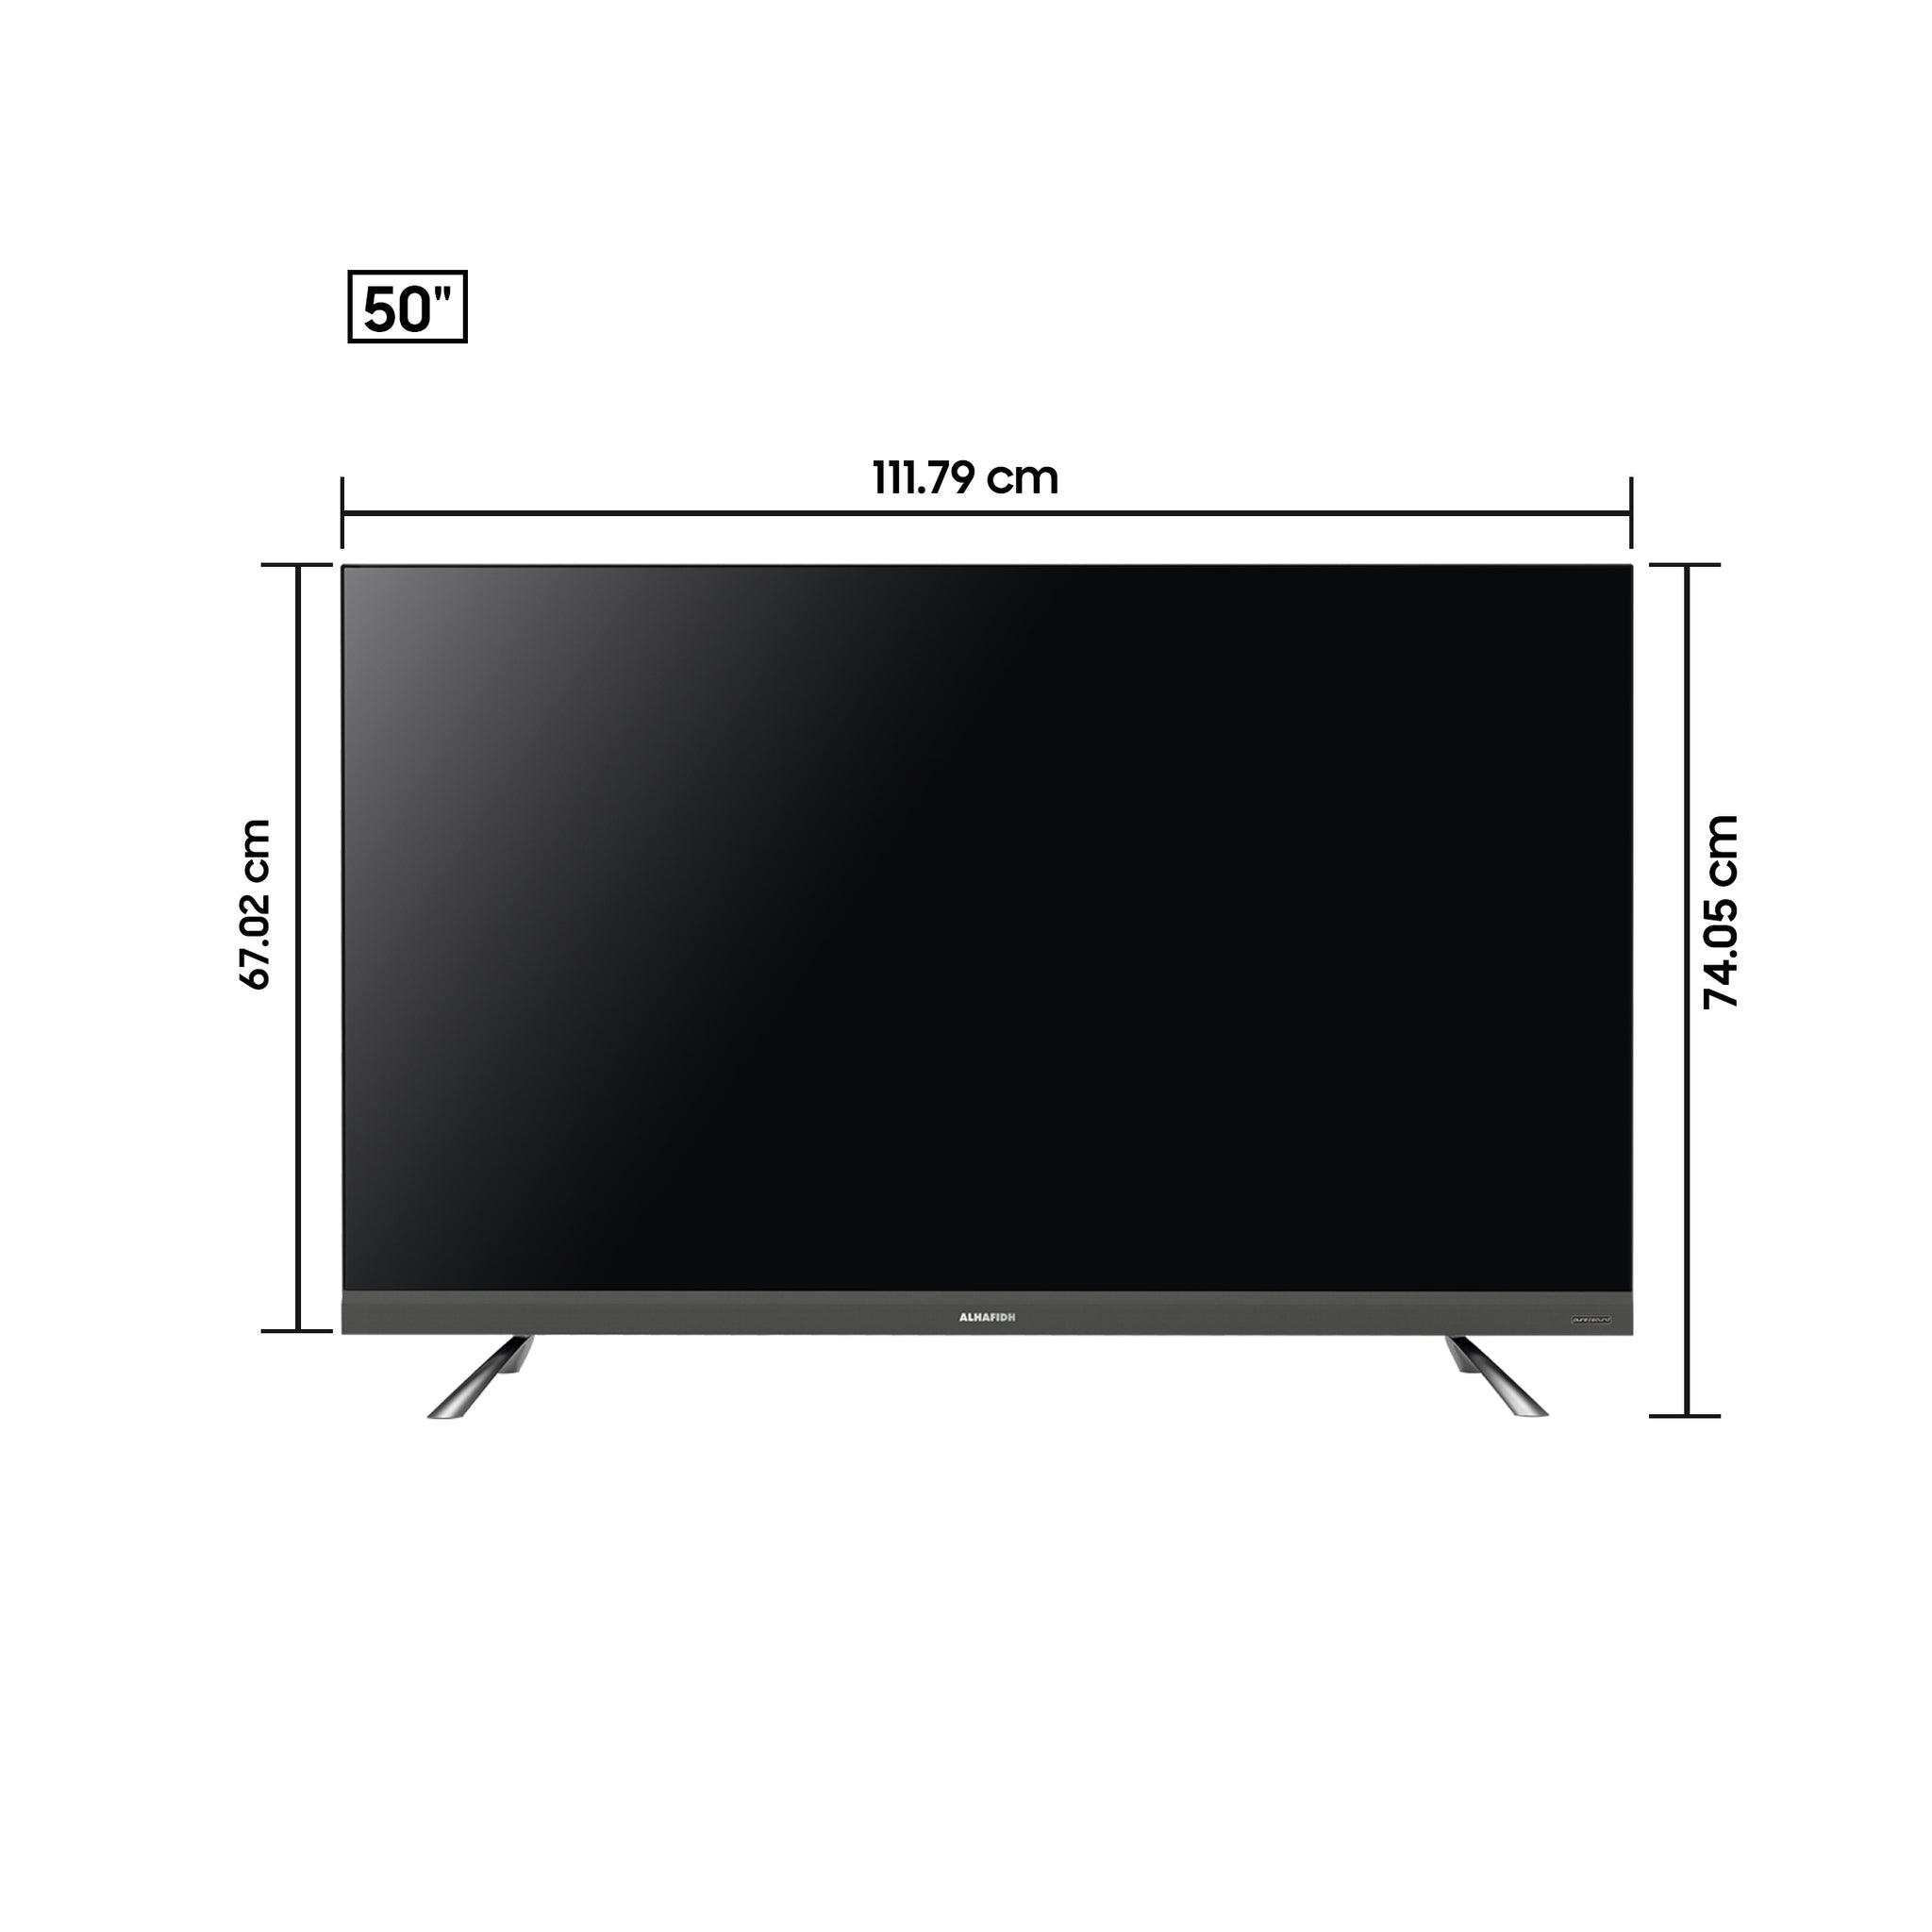  تلفزيون سمارت QLED 4K UHD قياس 50 بوصة (2021)